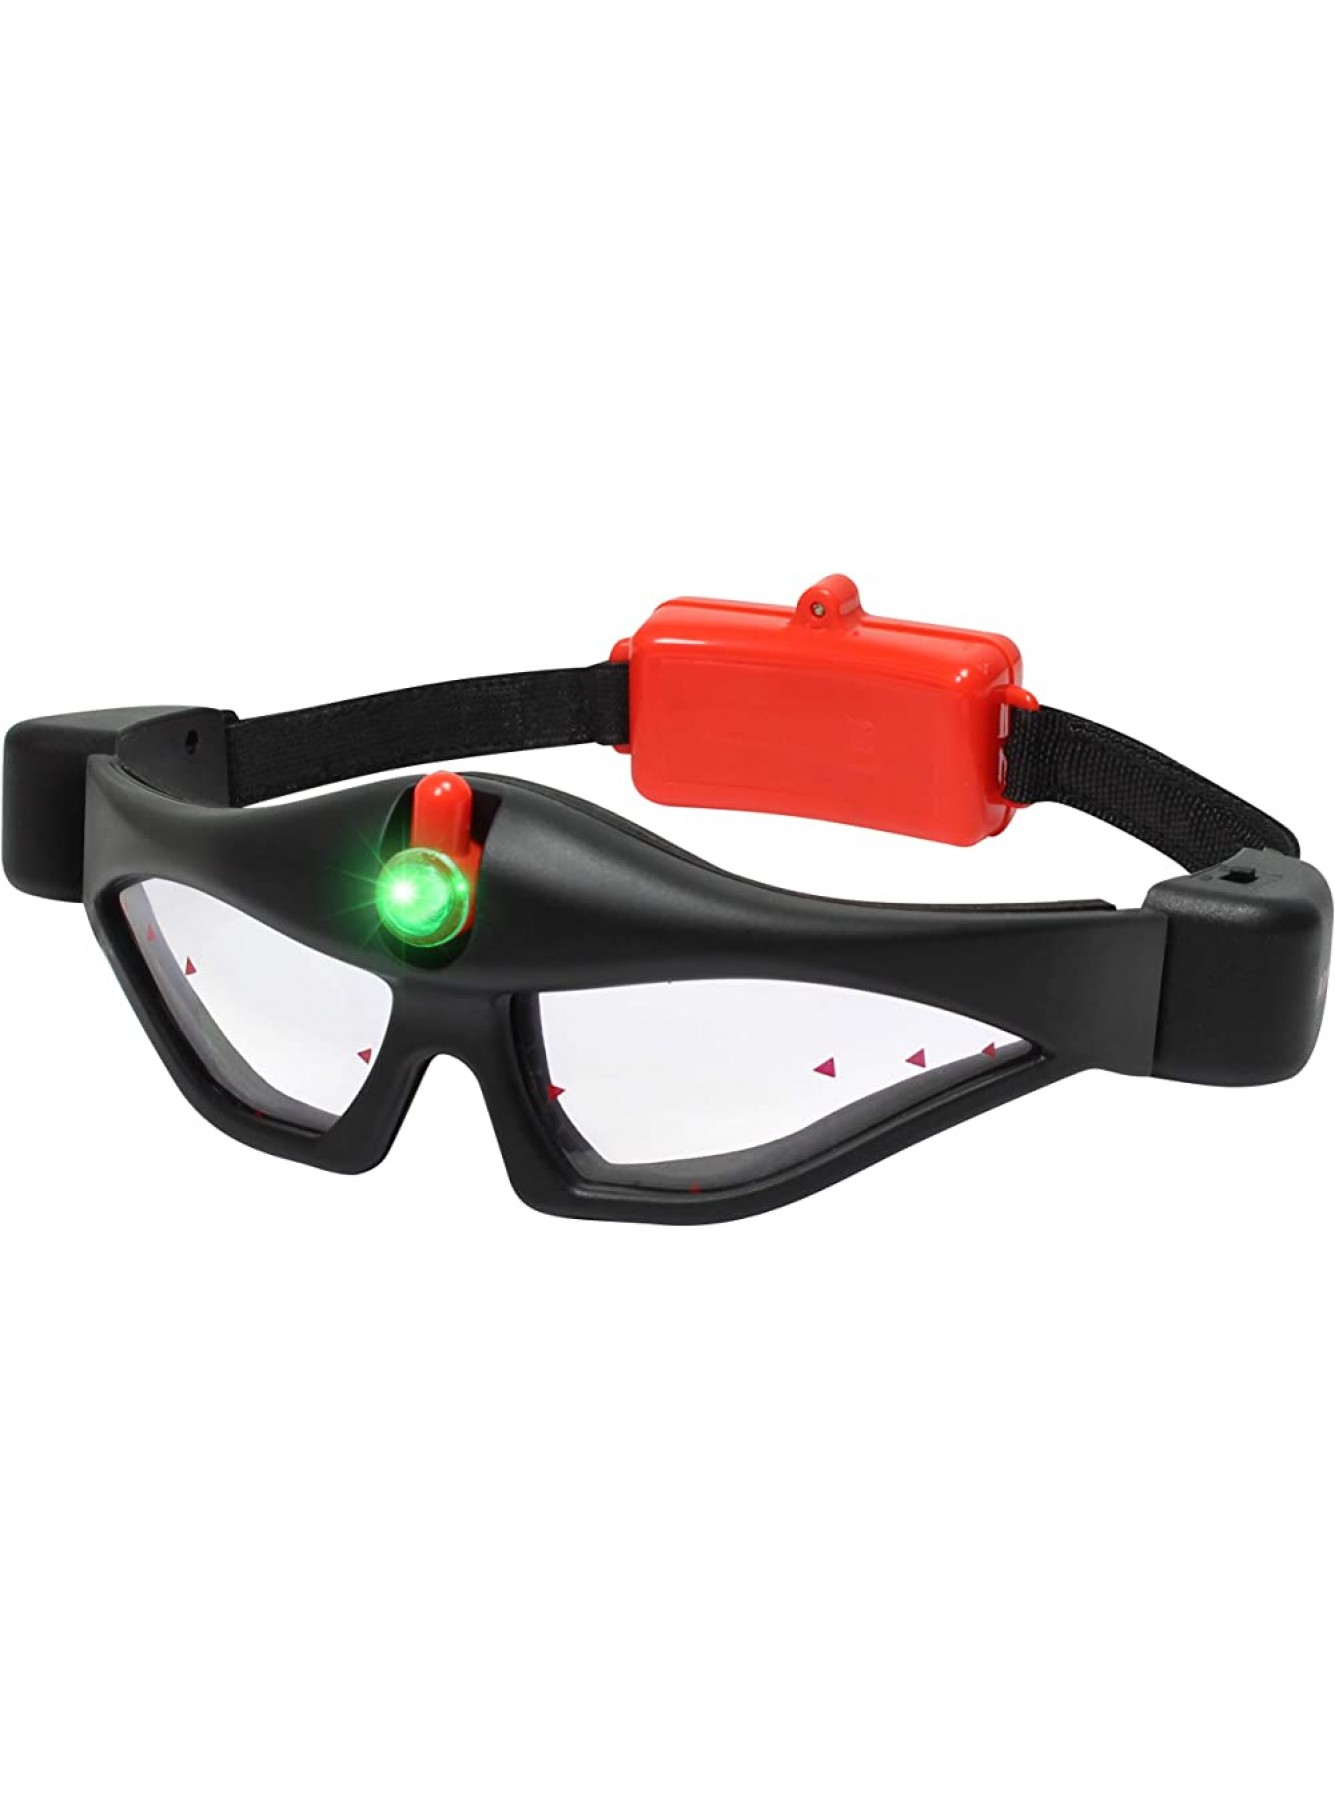 ArmoGear Kinder Nachtsichtbrille mit integriertem LED-Scheinwerfer - B07SH1SGRR